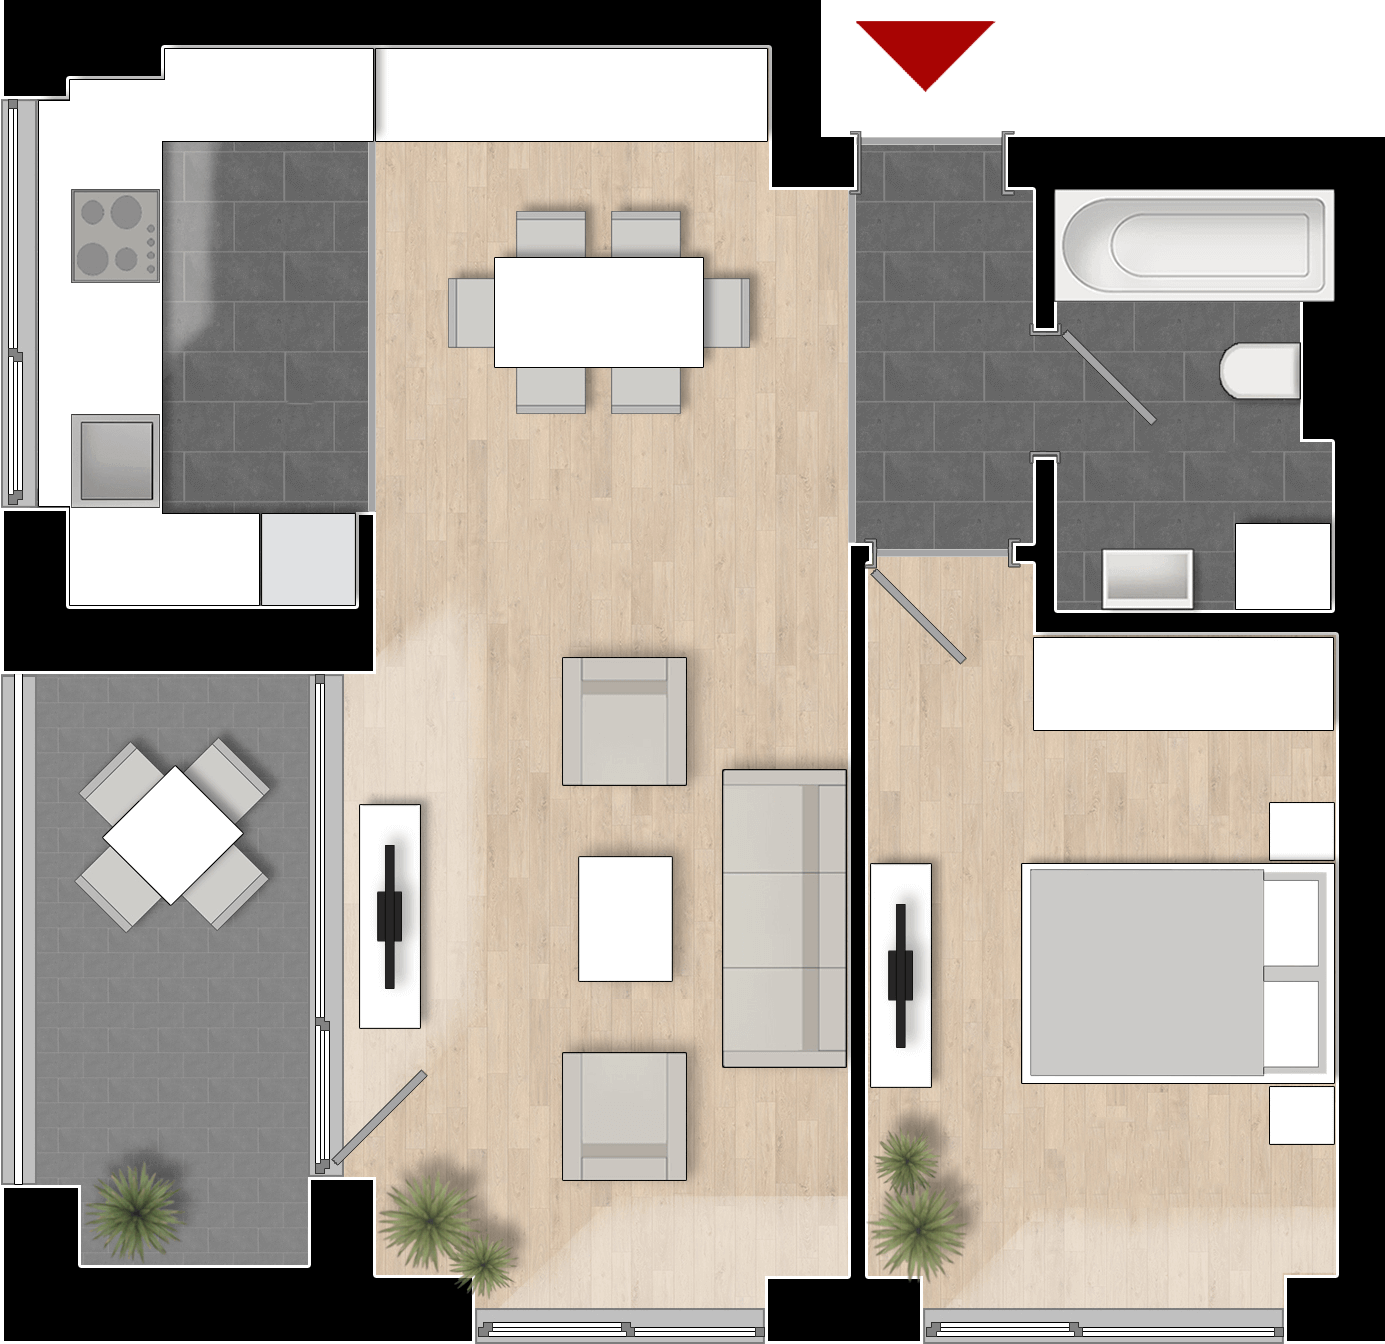  Apartament Tip 2B cu 2 camere 